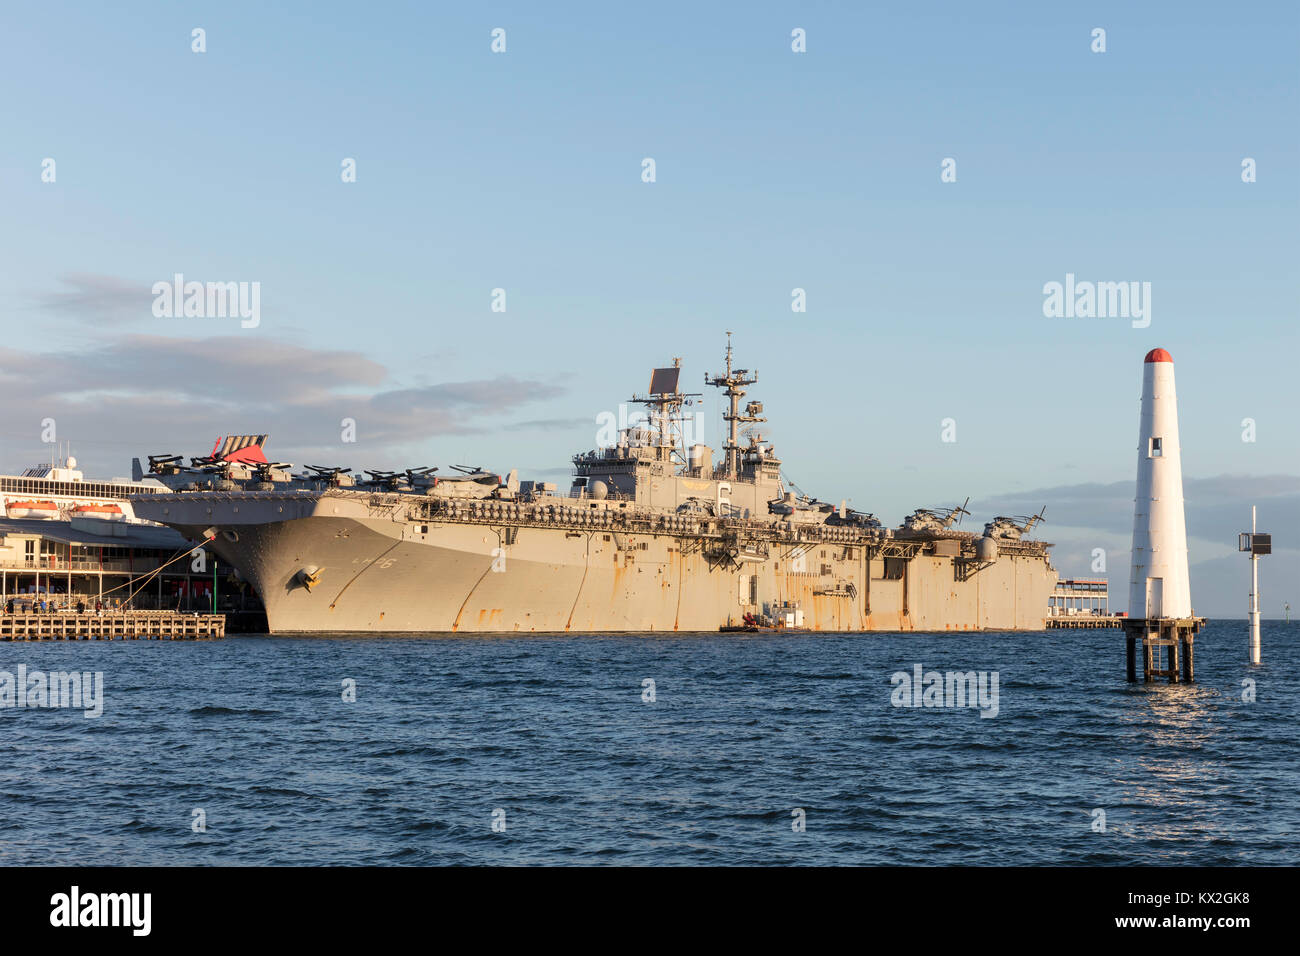 La USS Bonhomme Richard (LHD-6) wasp-classe assalto anfibio nave della marina degli Stati Uniti agganciato alla stazione di pi Foto Stock